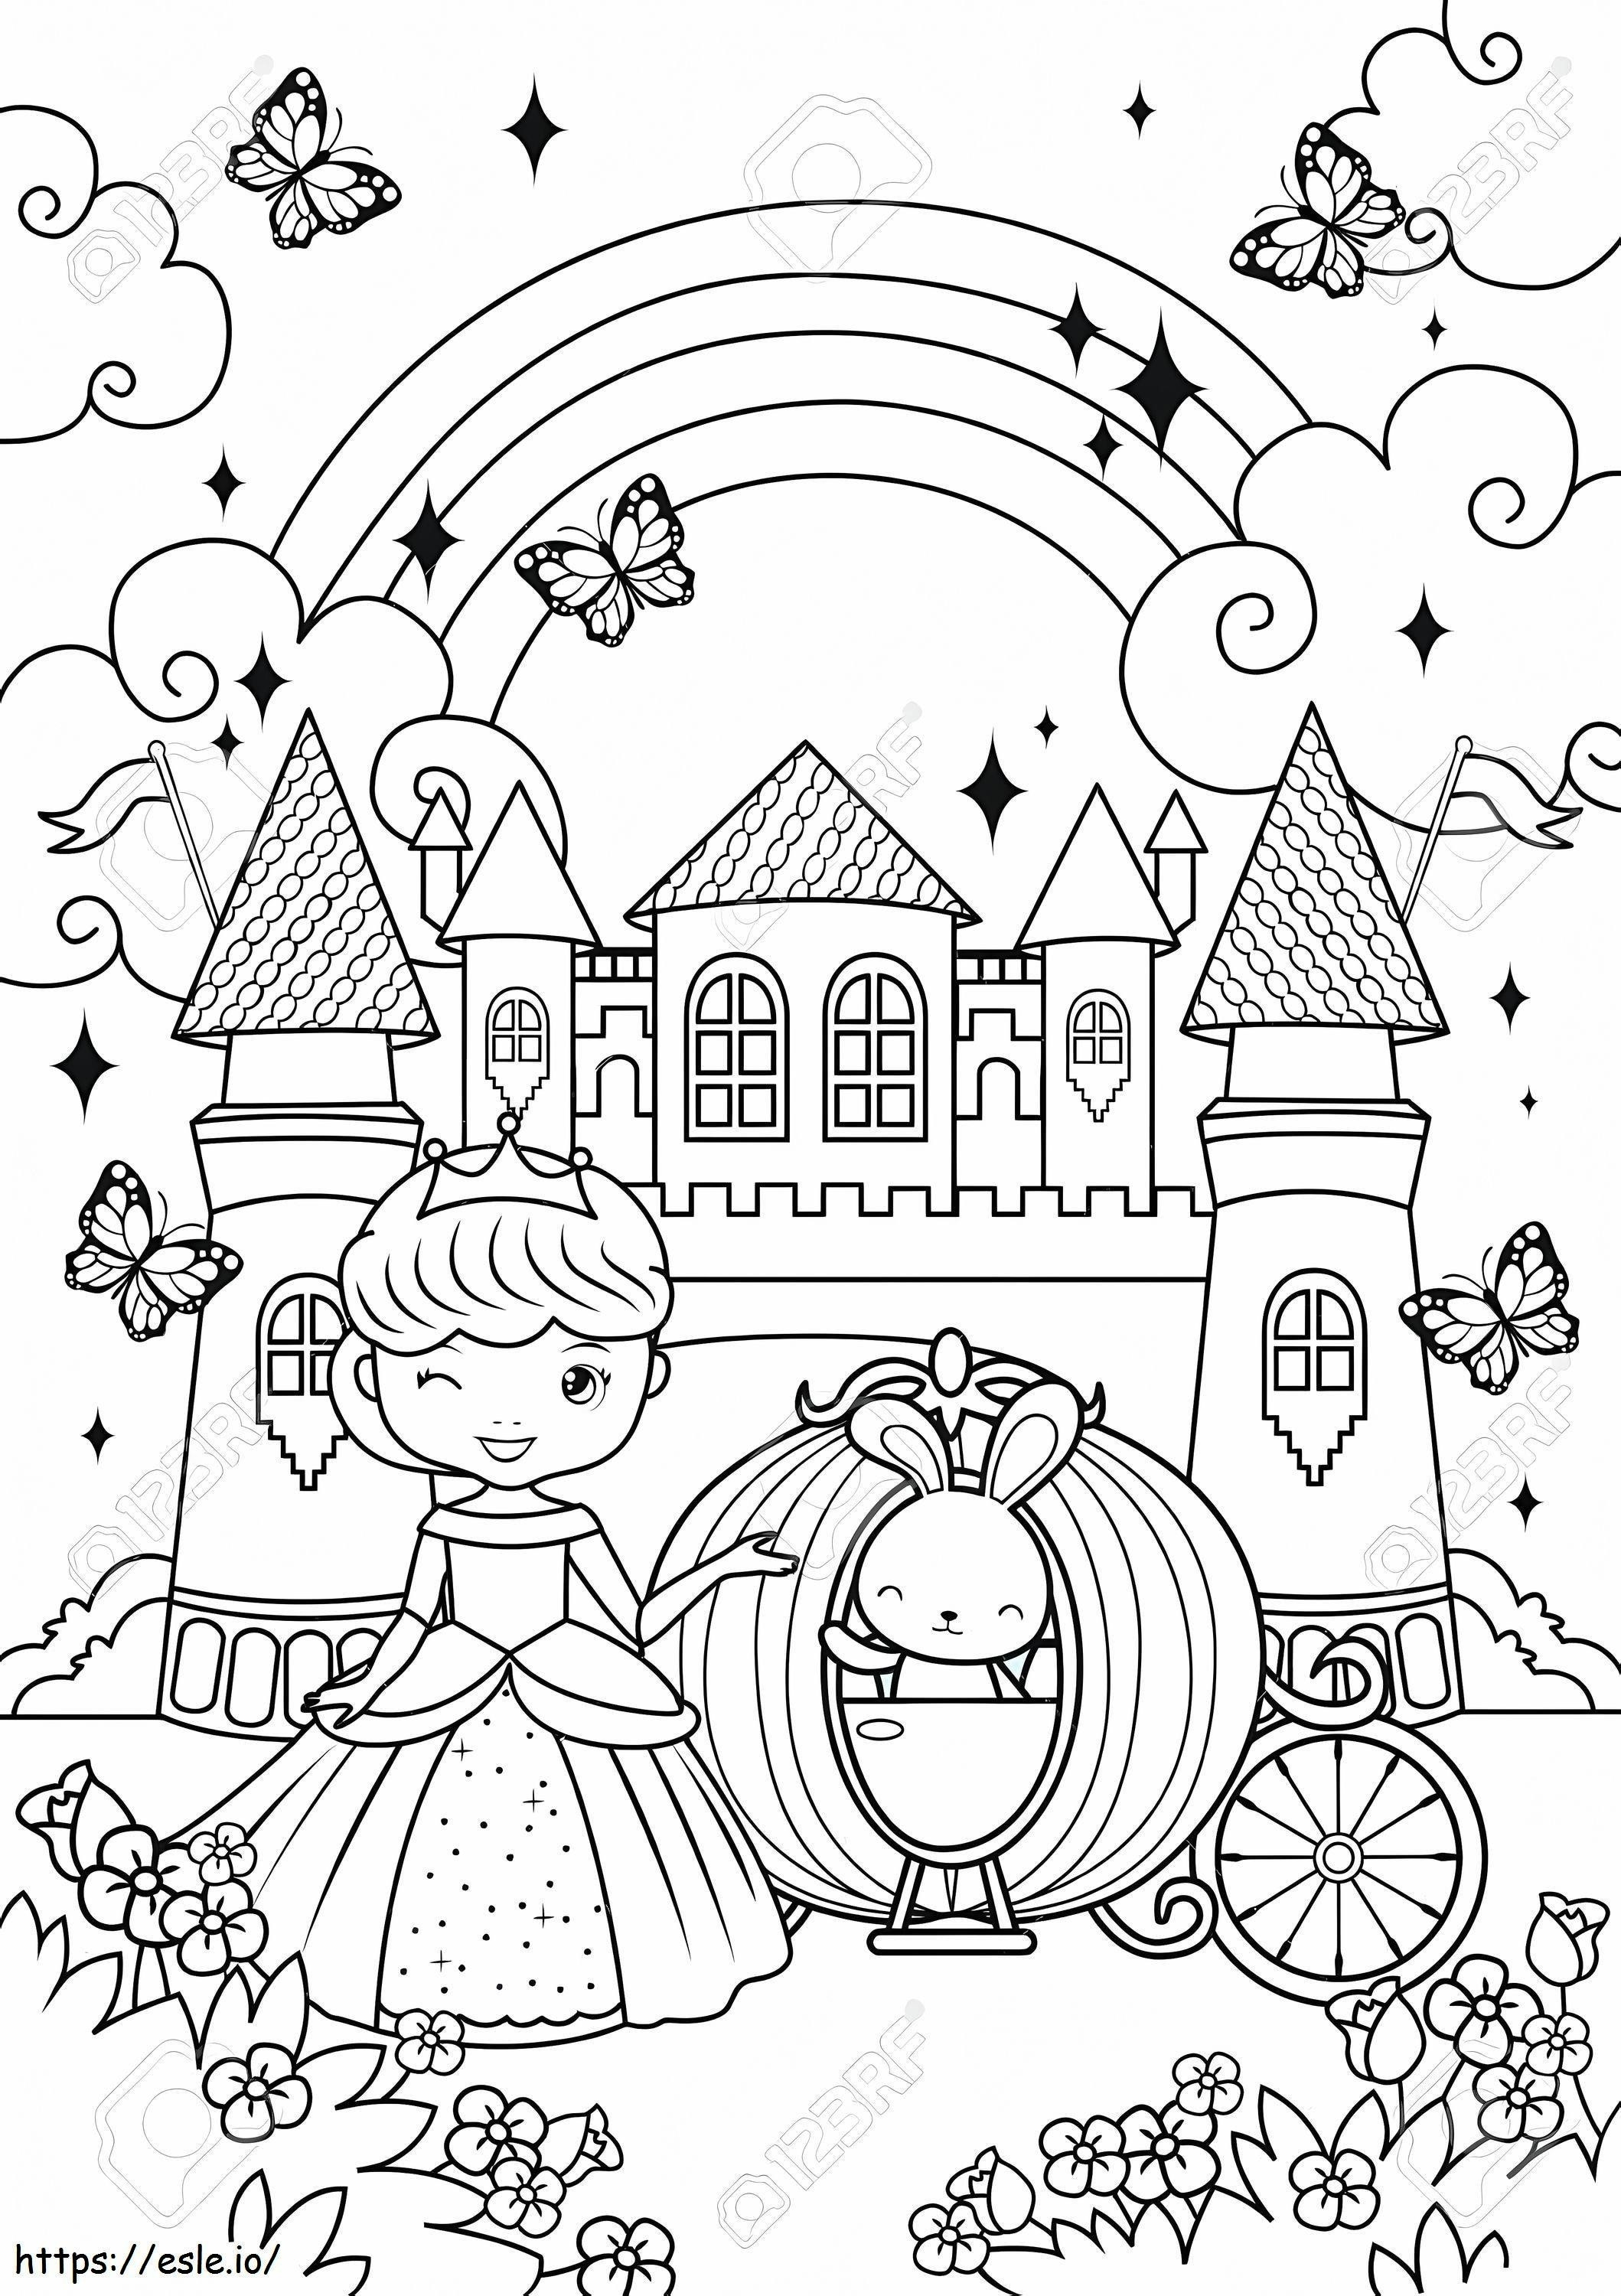 Süße Prinzessin und Hase im magischen Schloss ausmalbilder